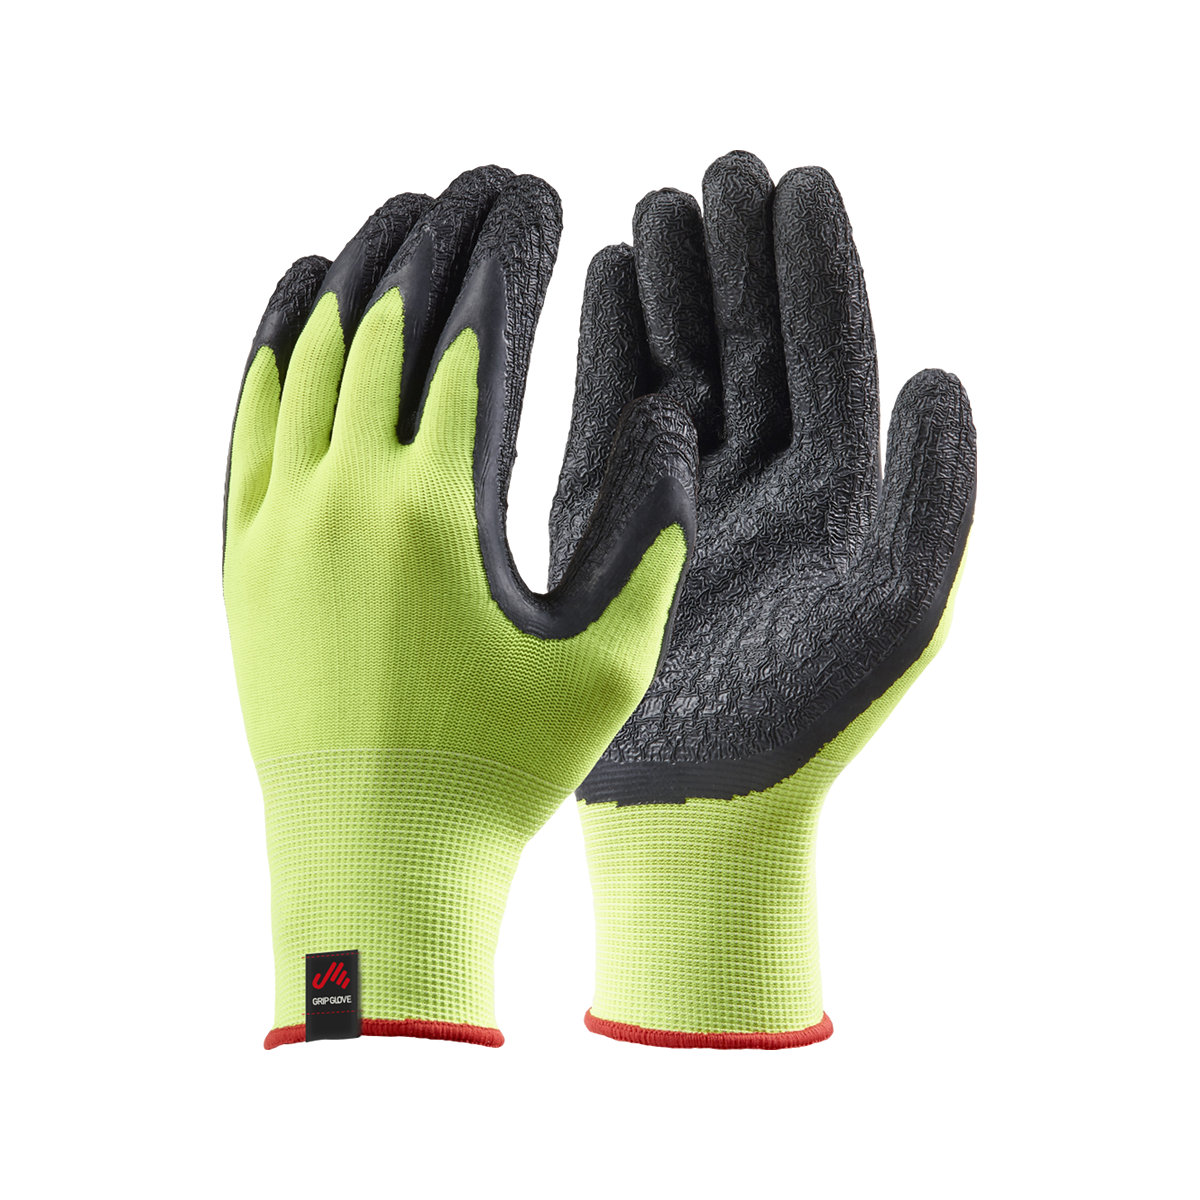 Musto Dipped Grip gants de voile jaune fluo, set de 3, taille M